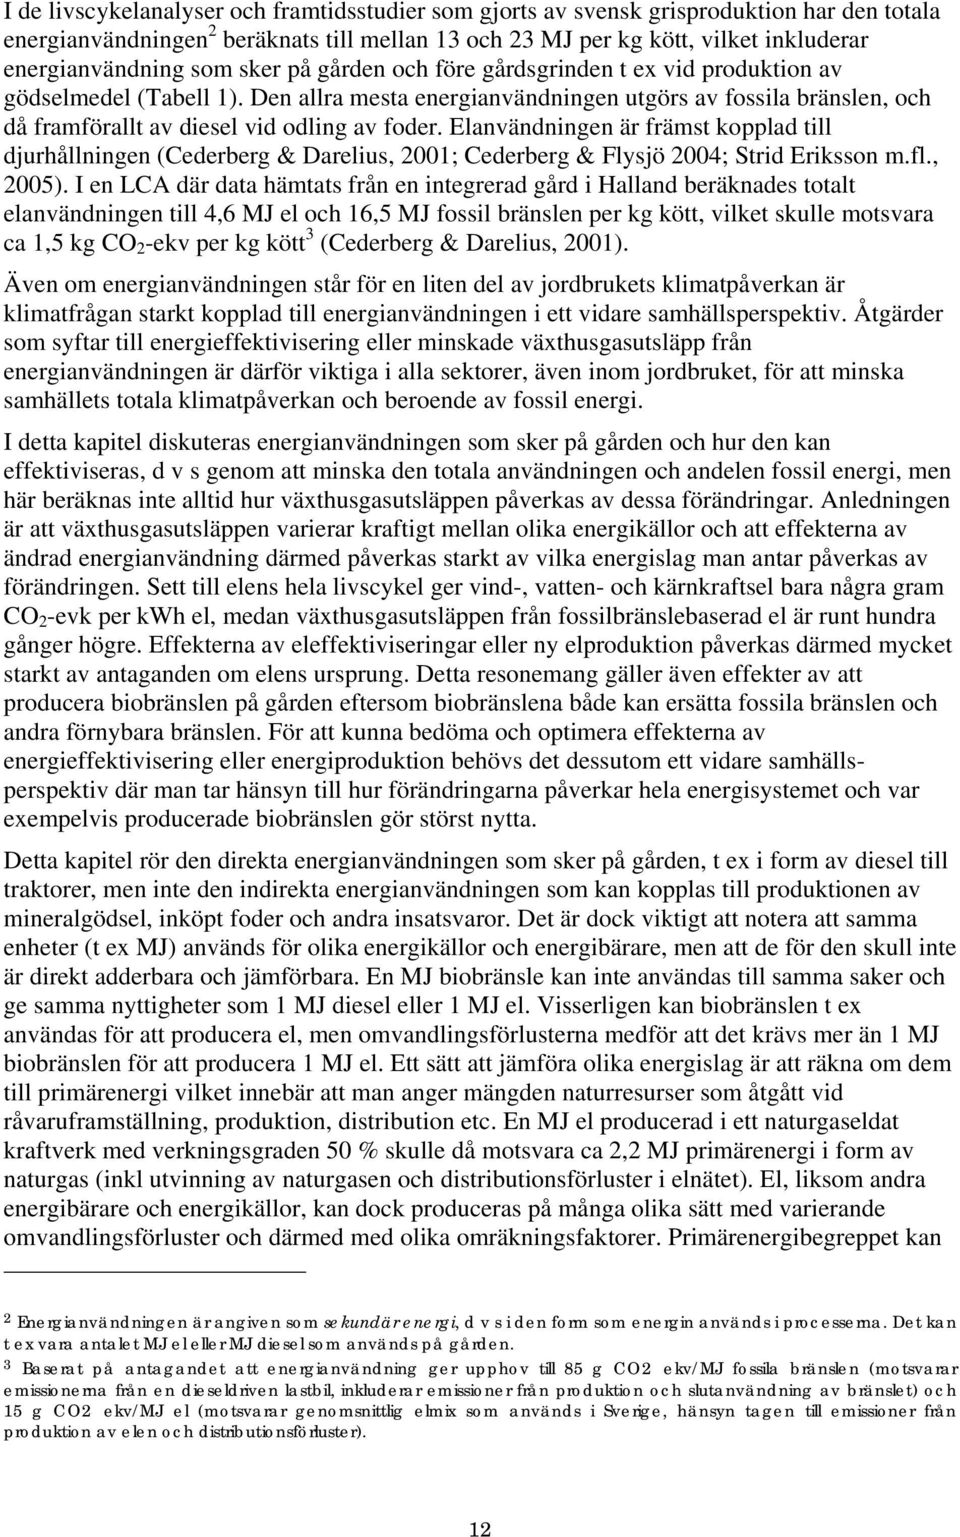 Elanvändningen är främst kopplad till djurhållningen (Cederberg & Darelius, 2001; Cederberg & Flysjö 2004; Strid Eriksson m.fl., 2005).